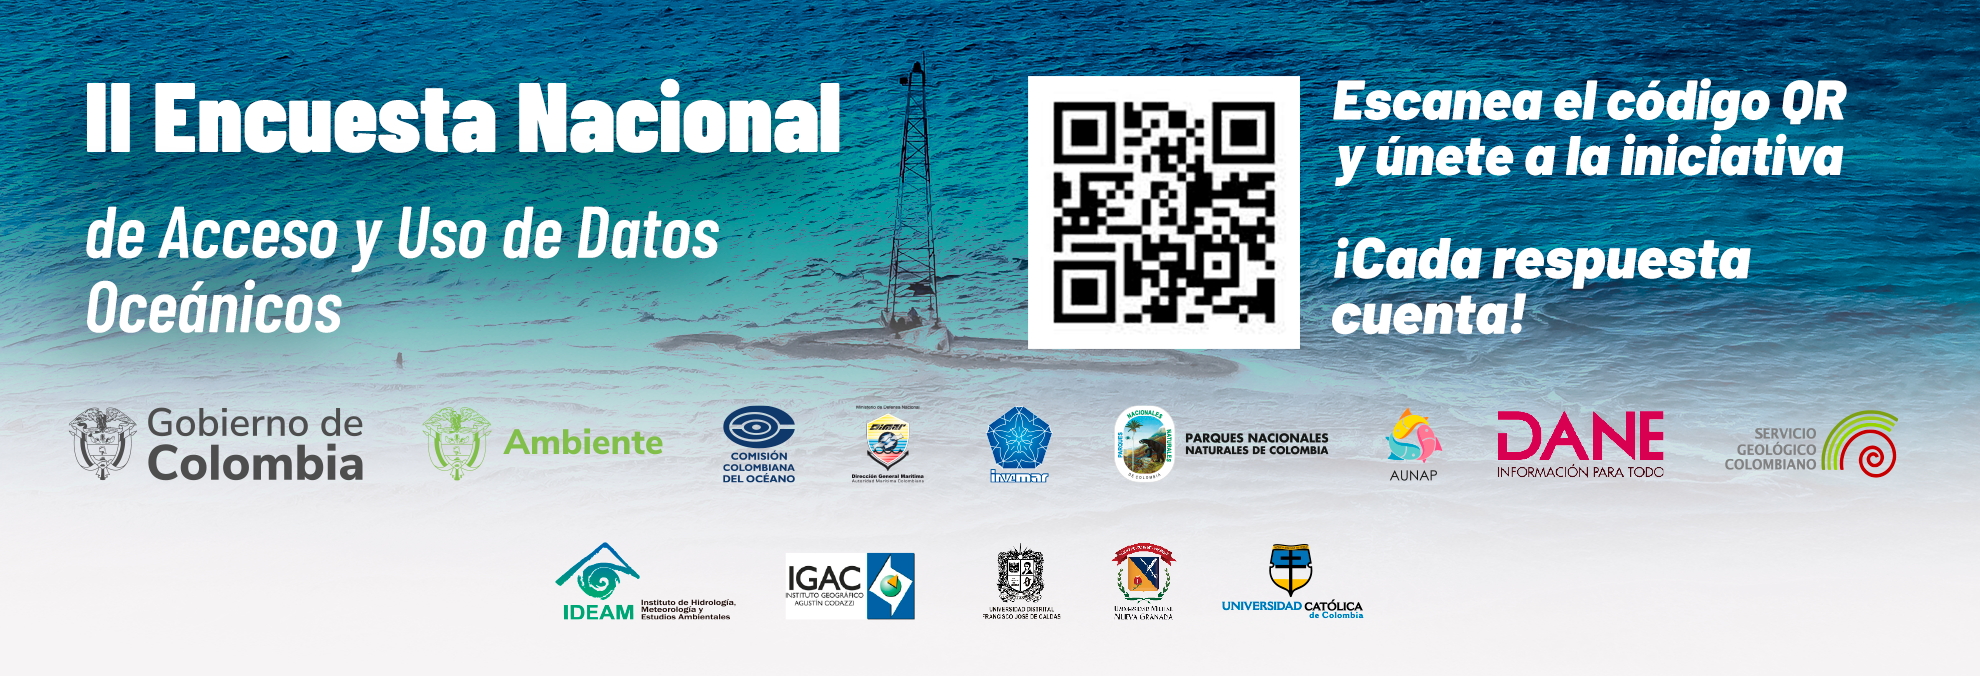  Encuesta Nacional de Acceso y uso de datos oceánicos.